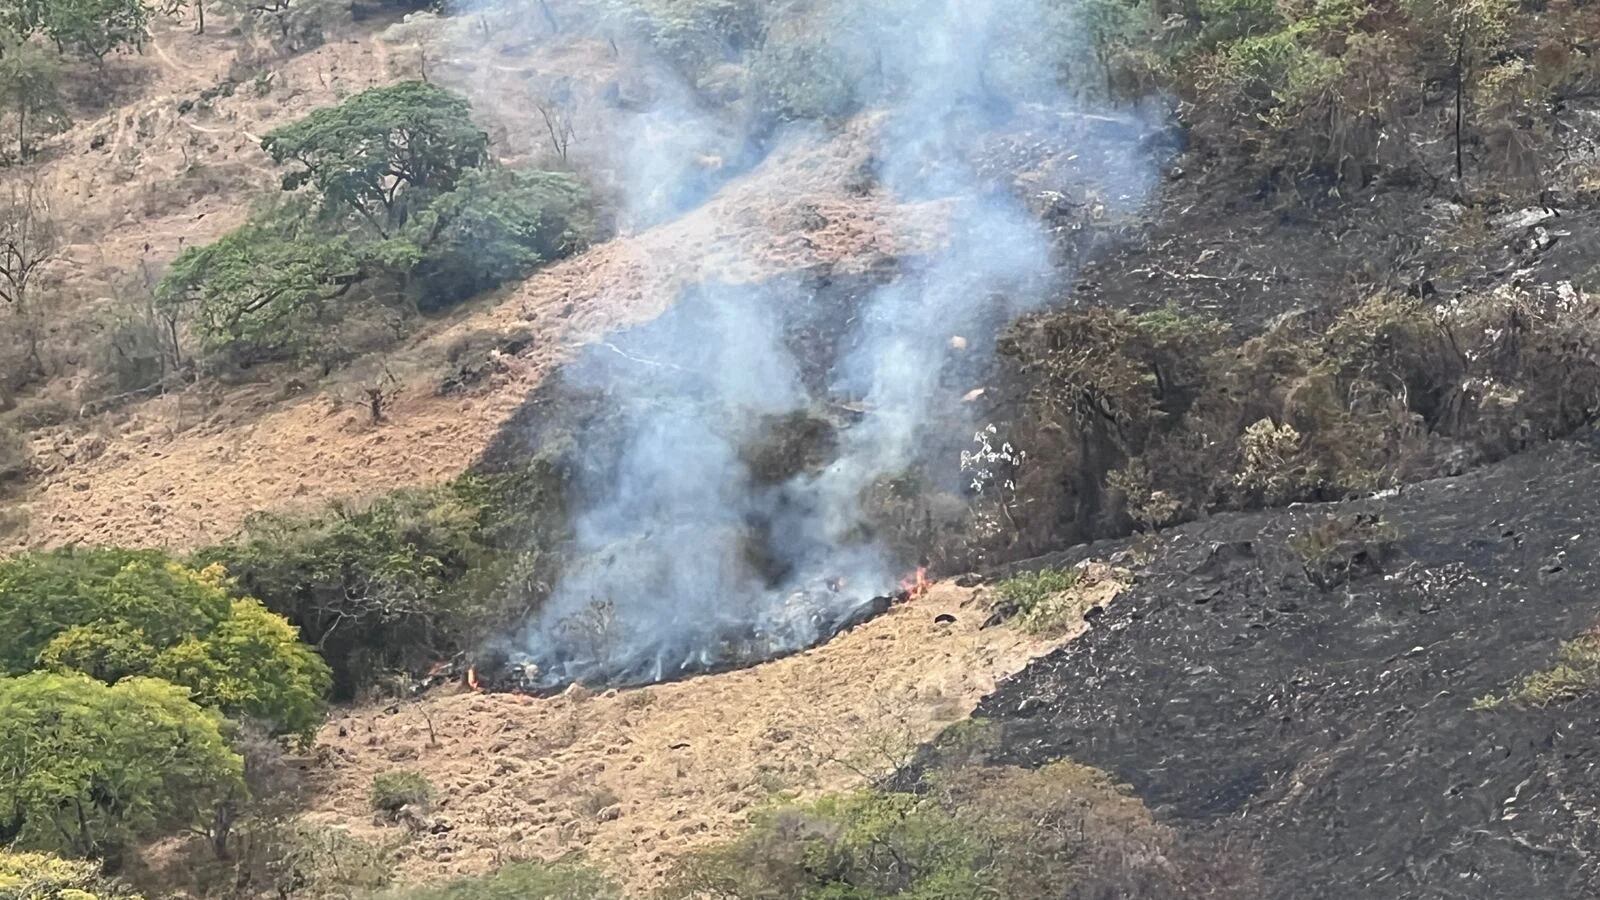 Continúan los esfuerzos para extinguir incendio de gran magnitud en Yaguará, Huila